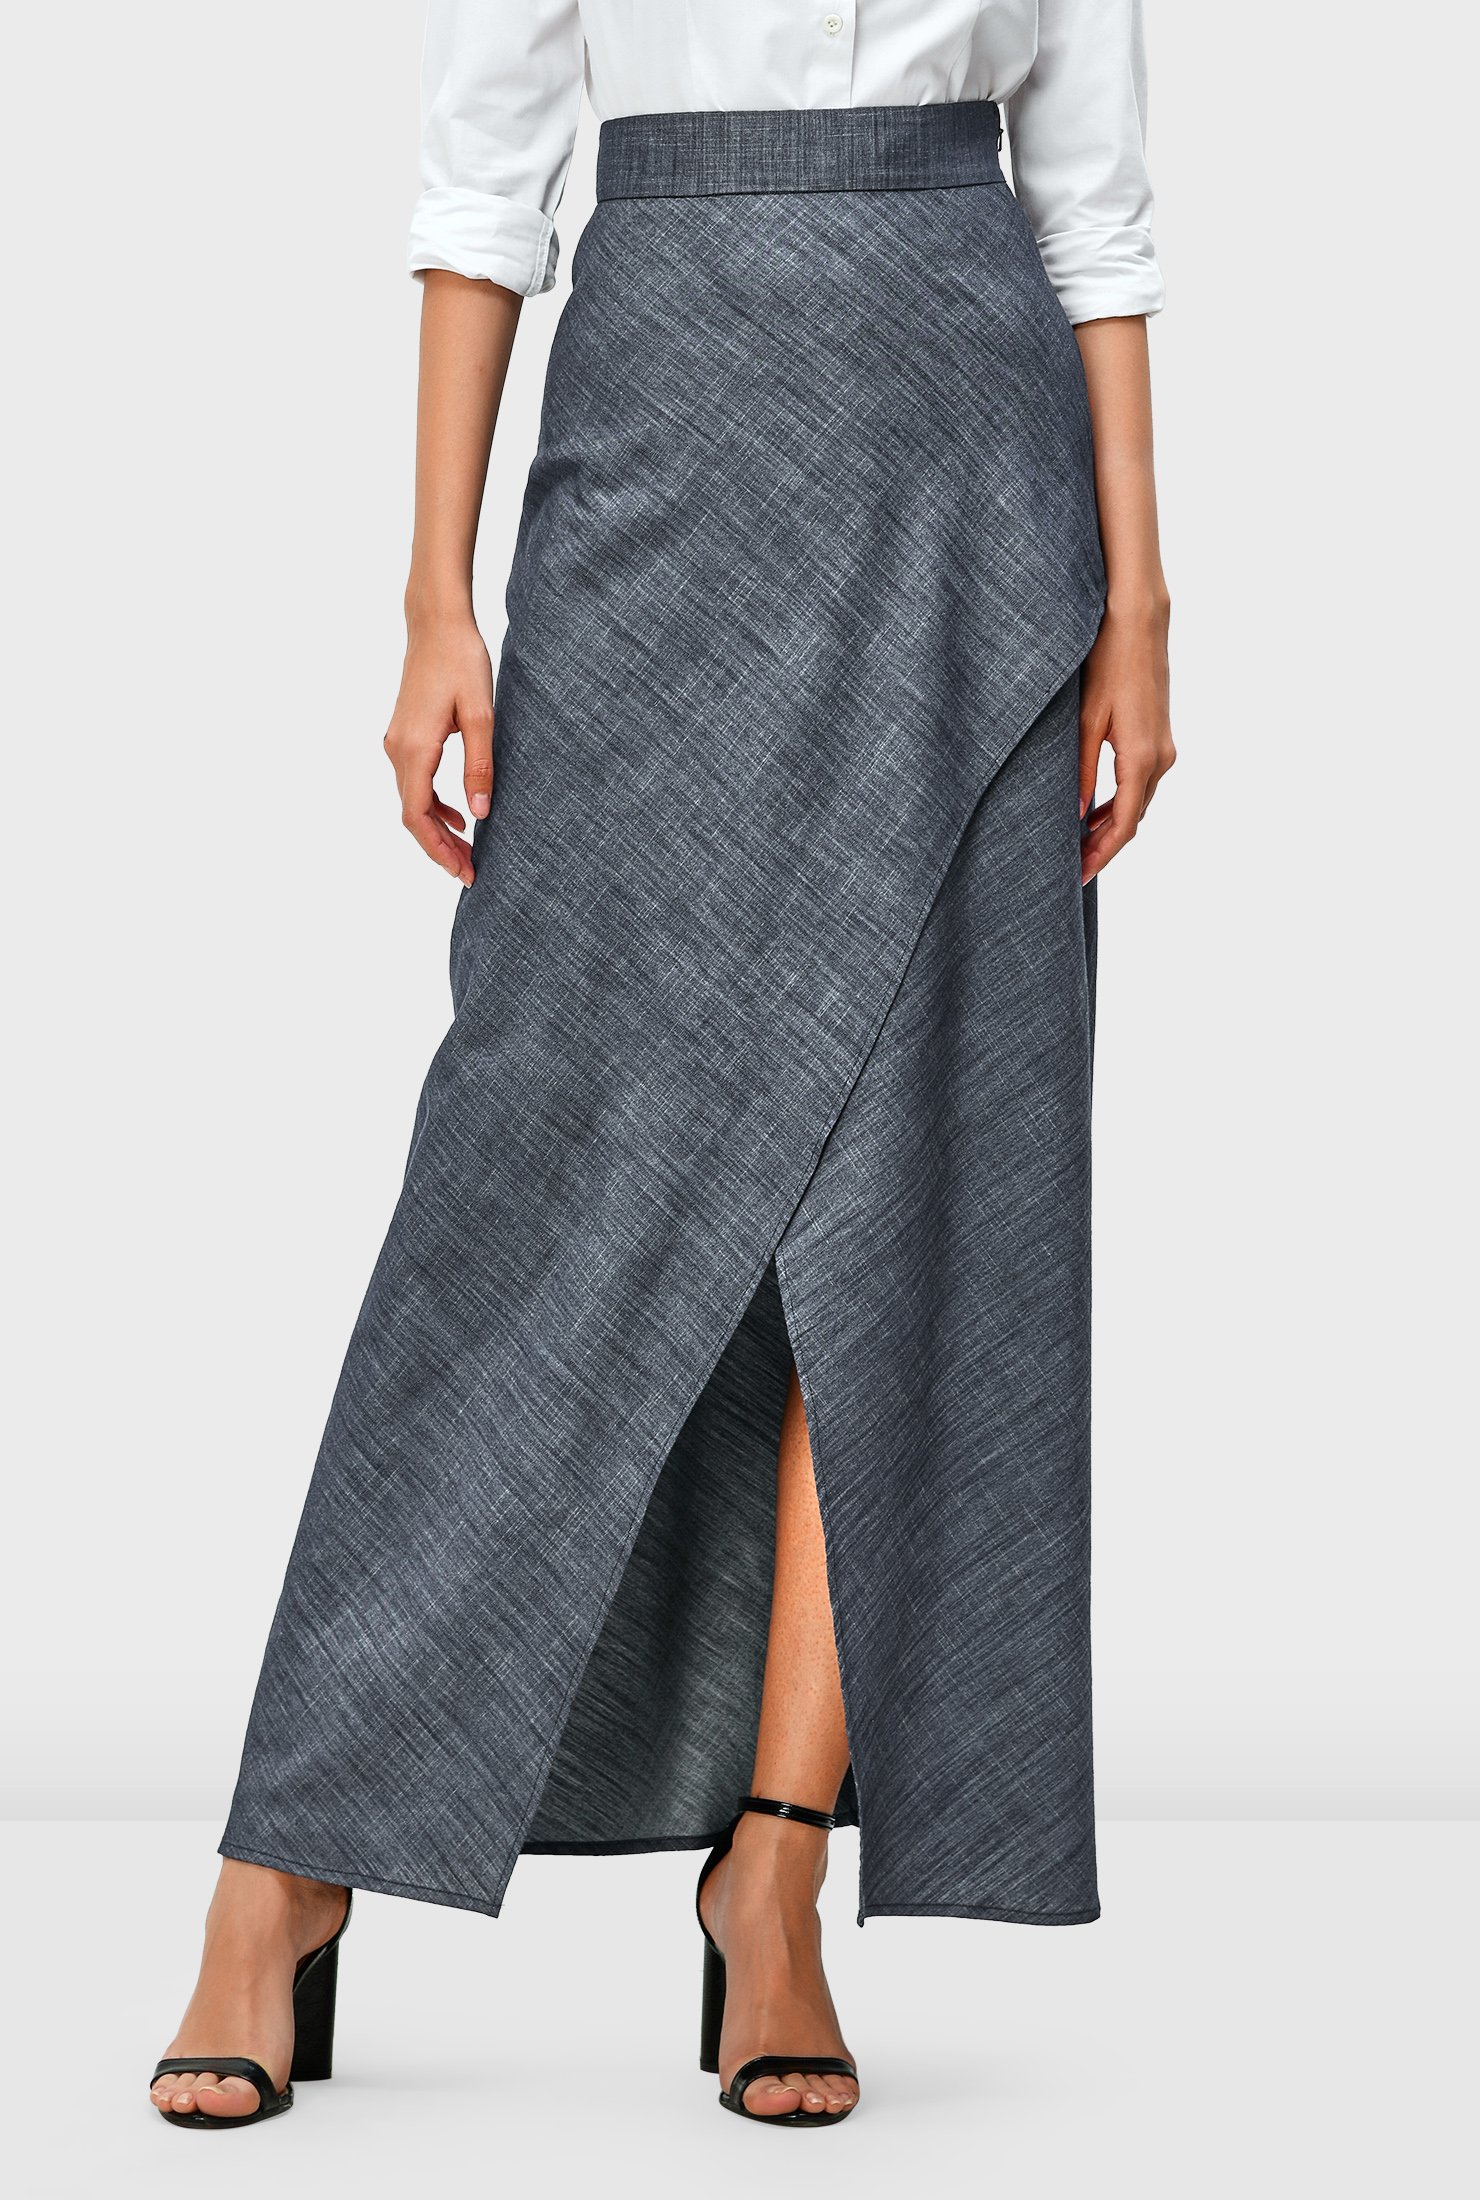 Cotton chambray faux wrap skirt